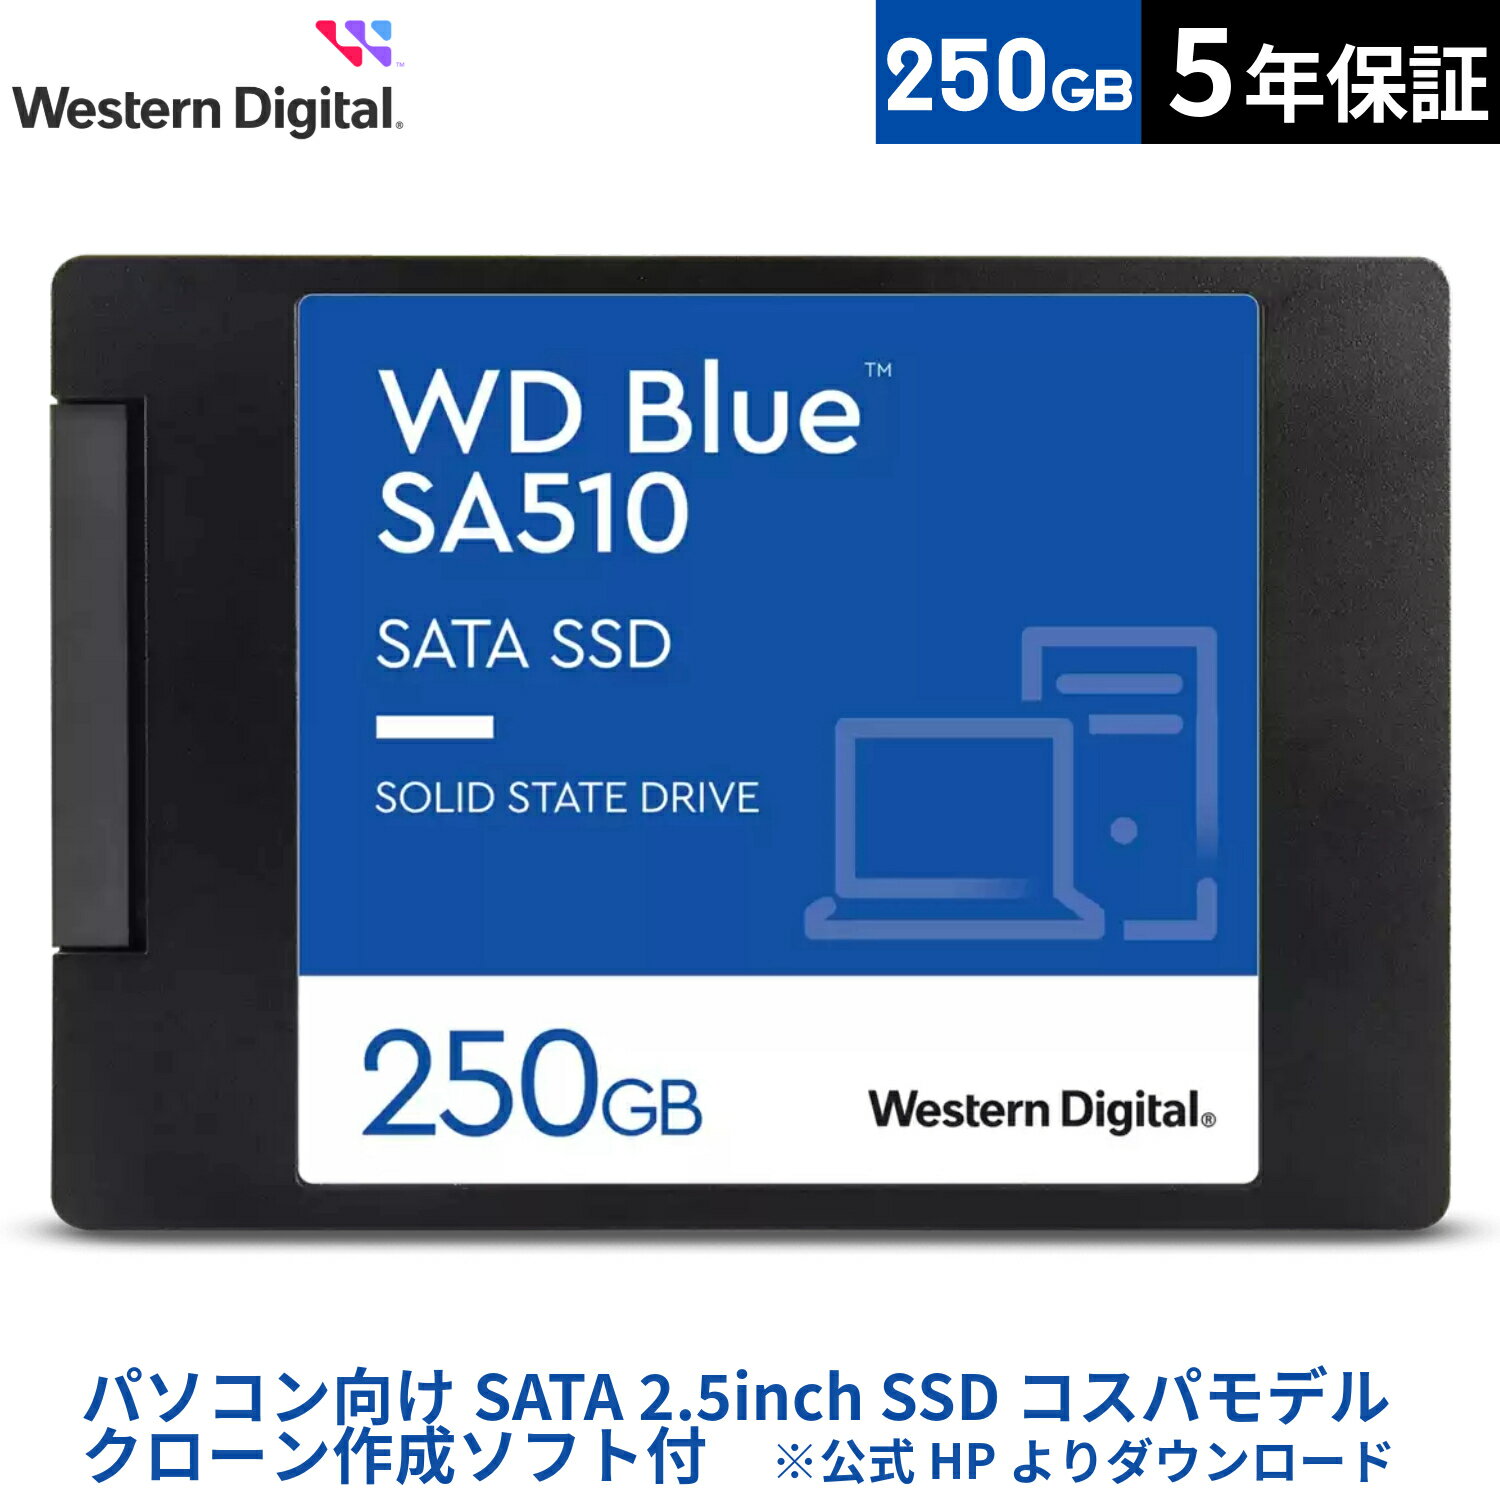 【国内正規流通品】Western Digital ウエスタンデジタル 内蔵SSD 250GB WD Blue SA510 2.5インチ WDS250G3B0A |省電力 SATA デスクトップPC ノートPC 増設 クリエイティブ 7mm 長寿命 増設 高速 PCパーツ 内蔵ssd